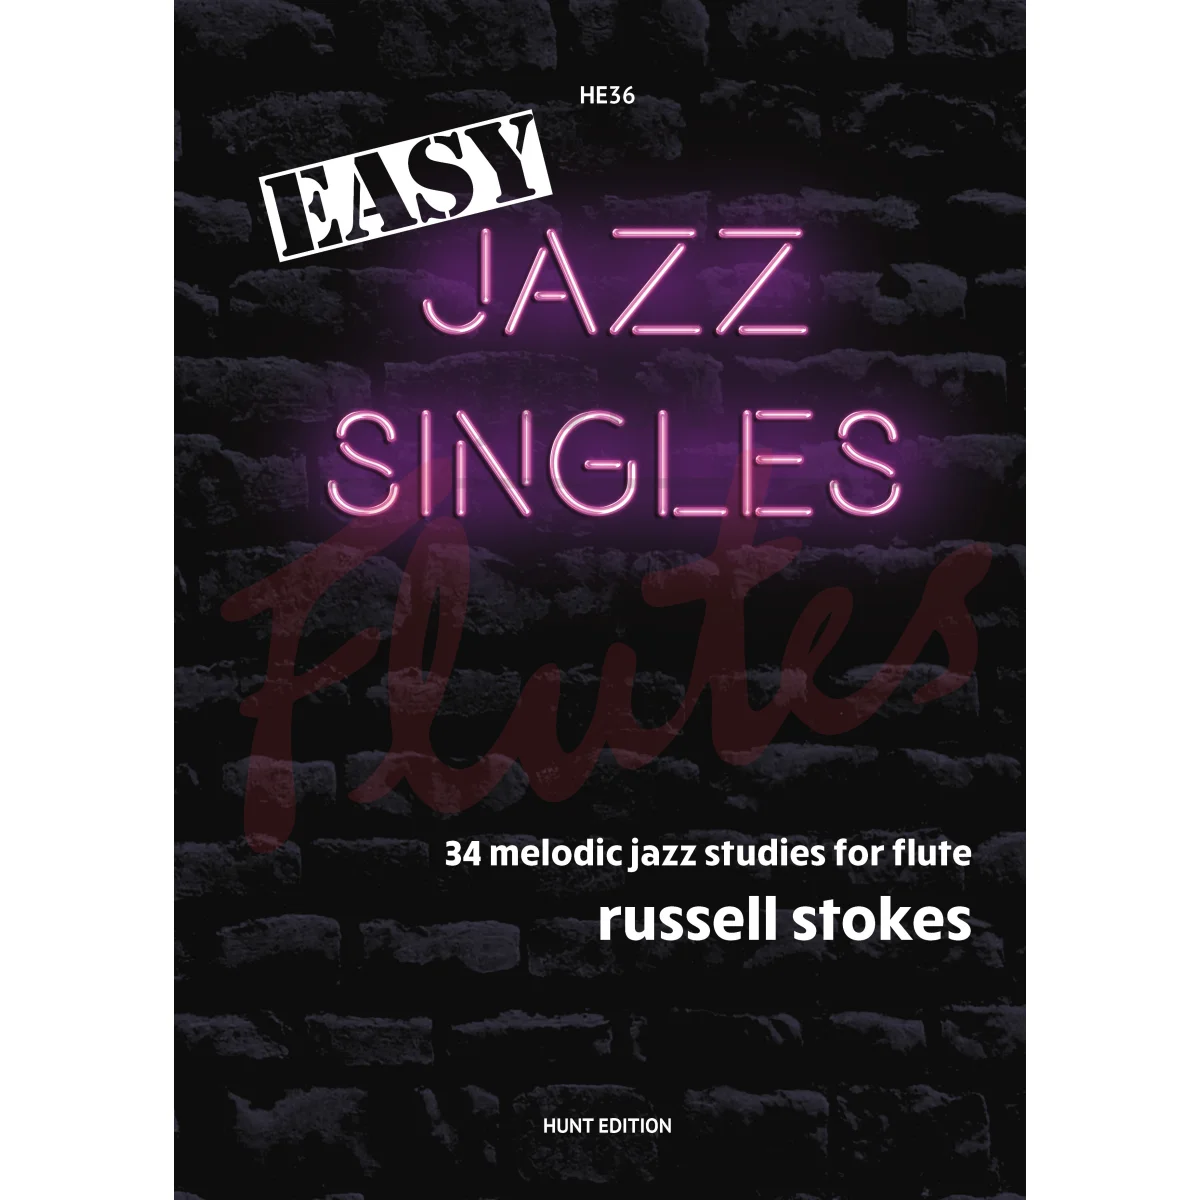 Easy Jazz Singles for Flute